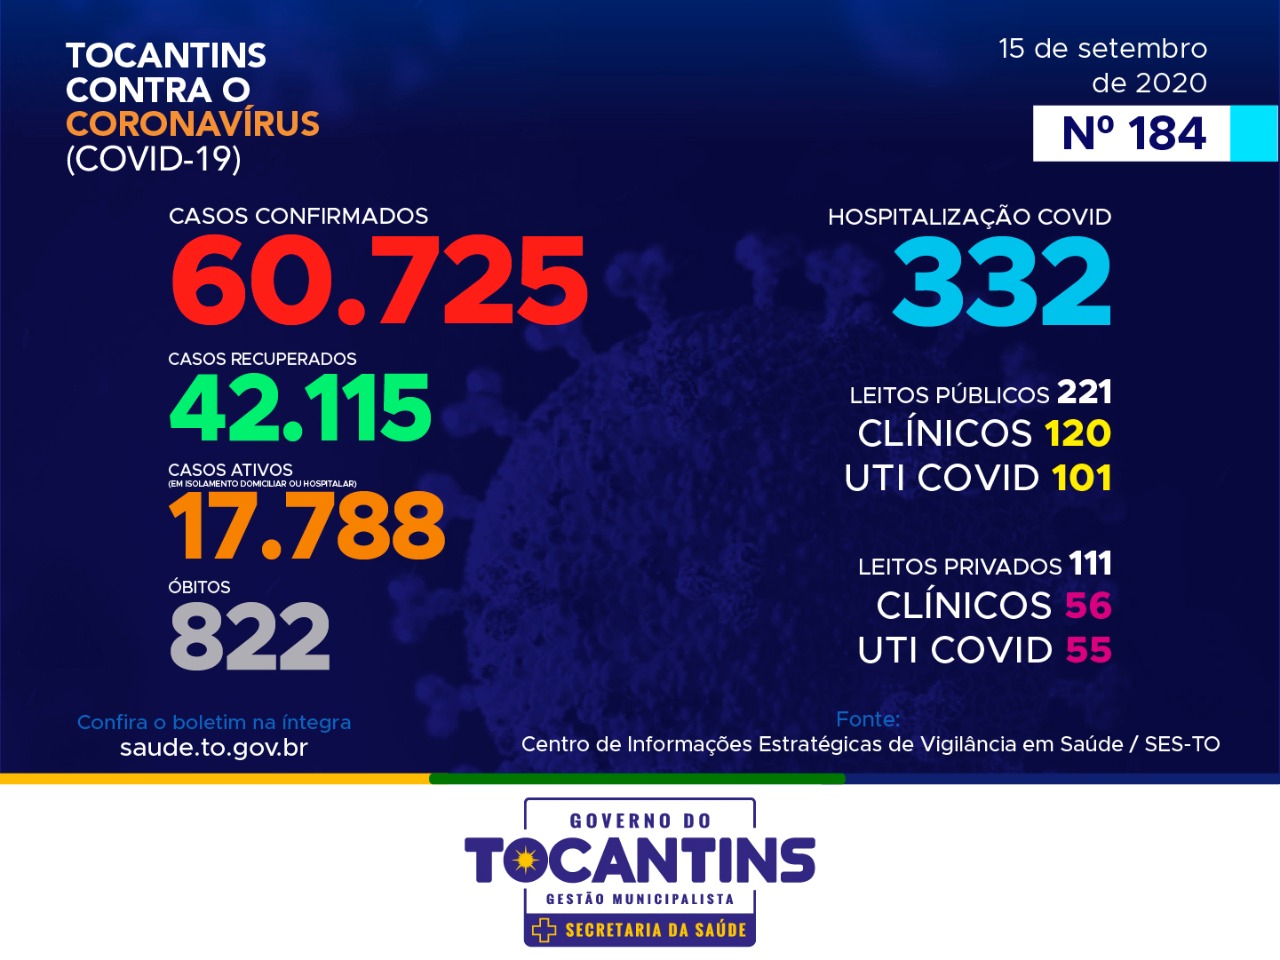 Coronavírus: hoje o Tocantins registra 736 casos, destes, 46% está entre 20 a 39 anos